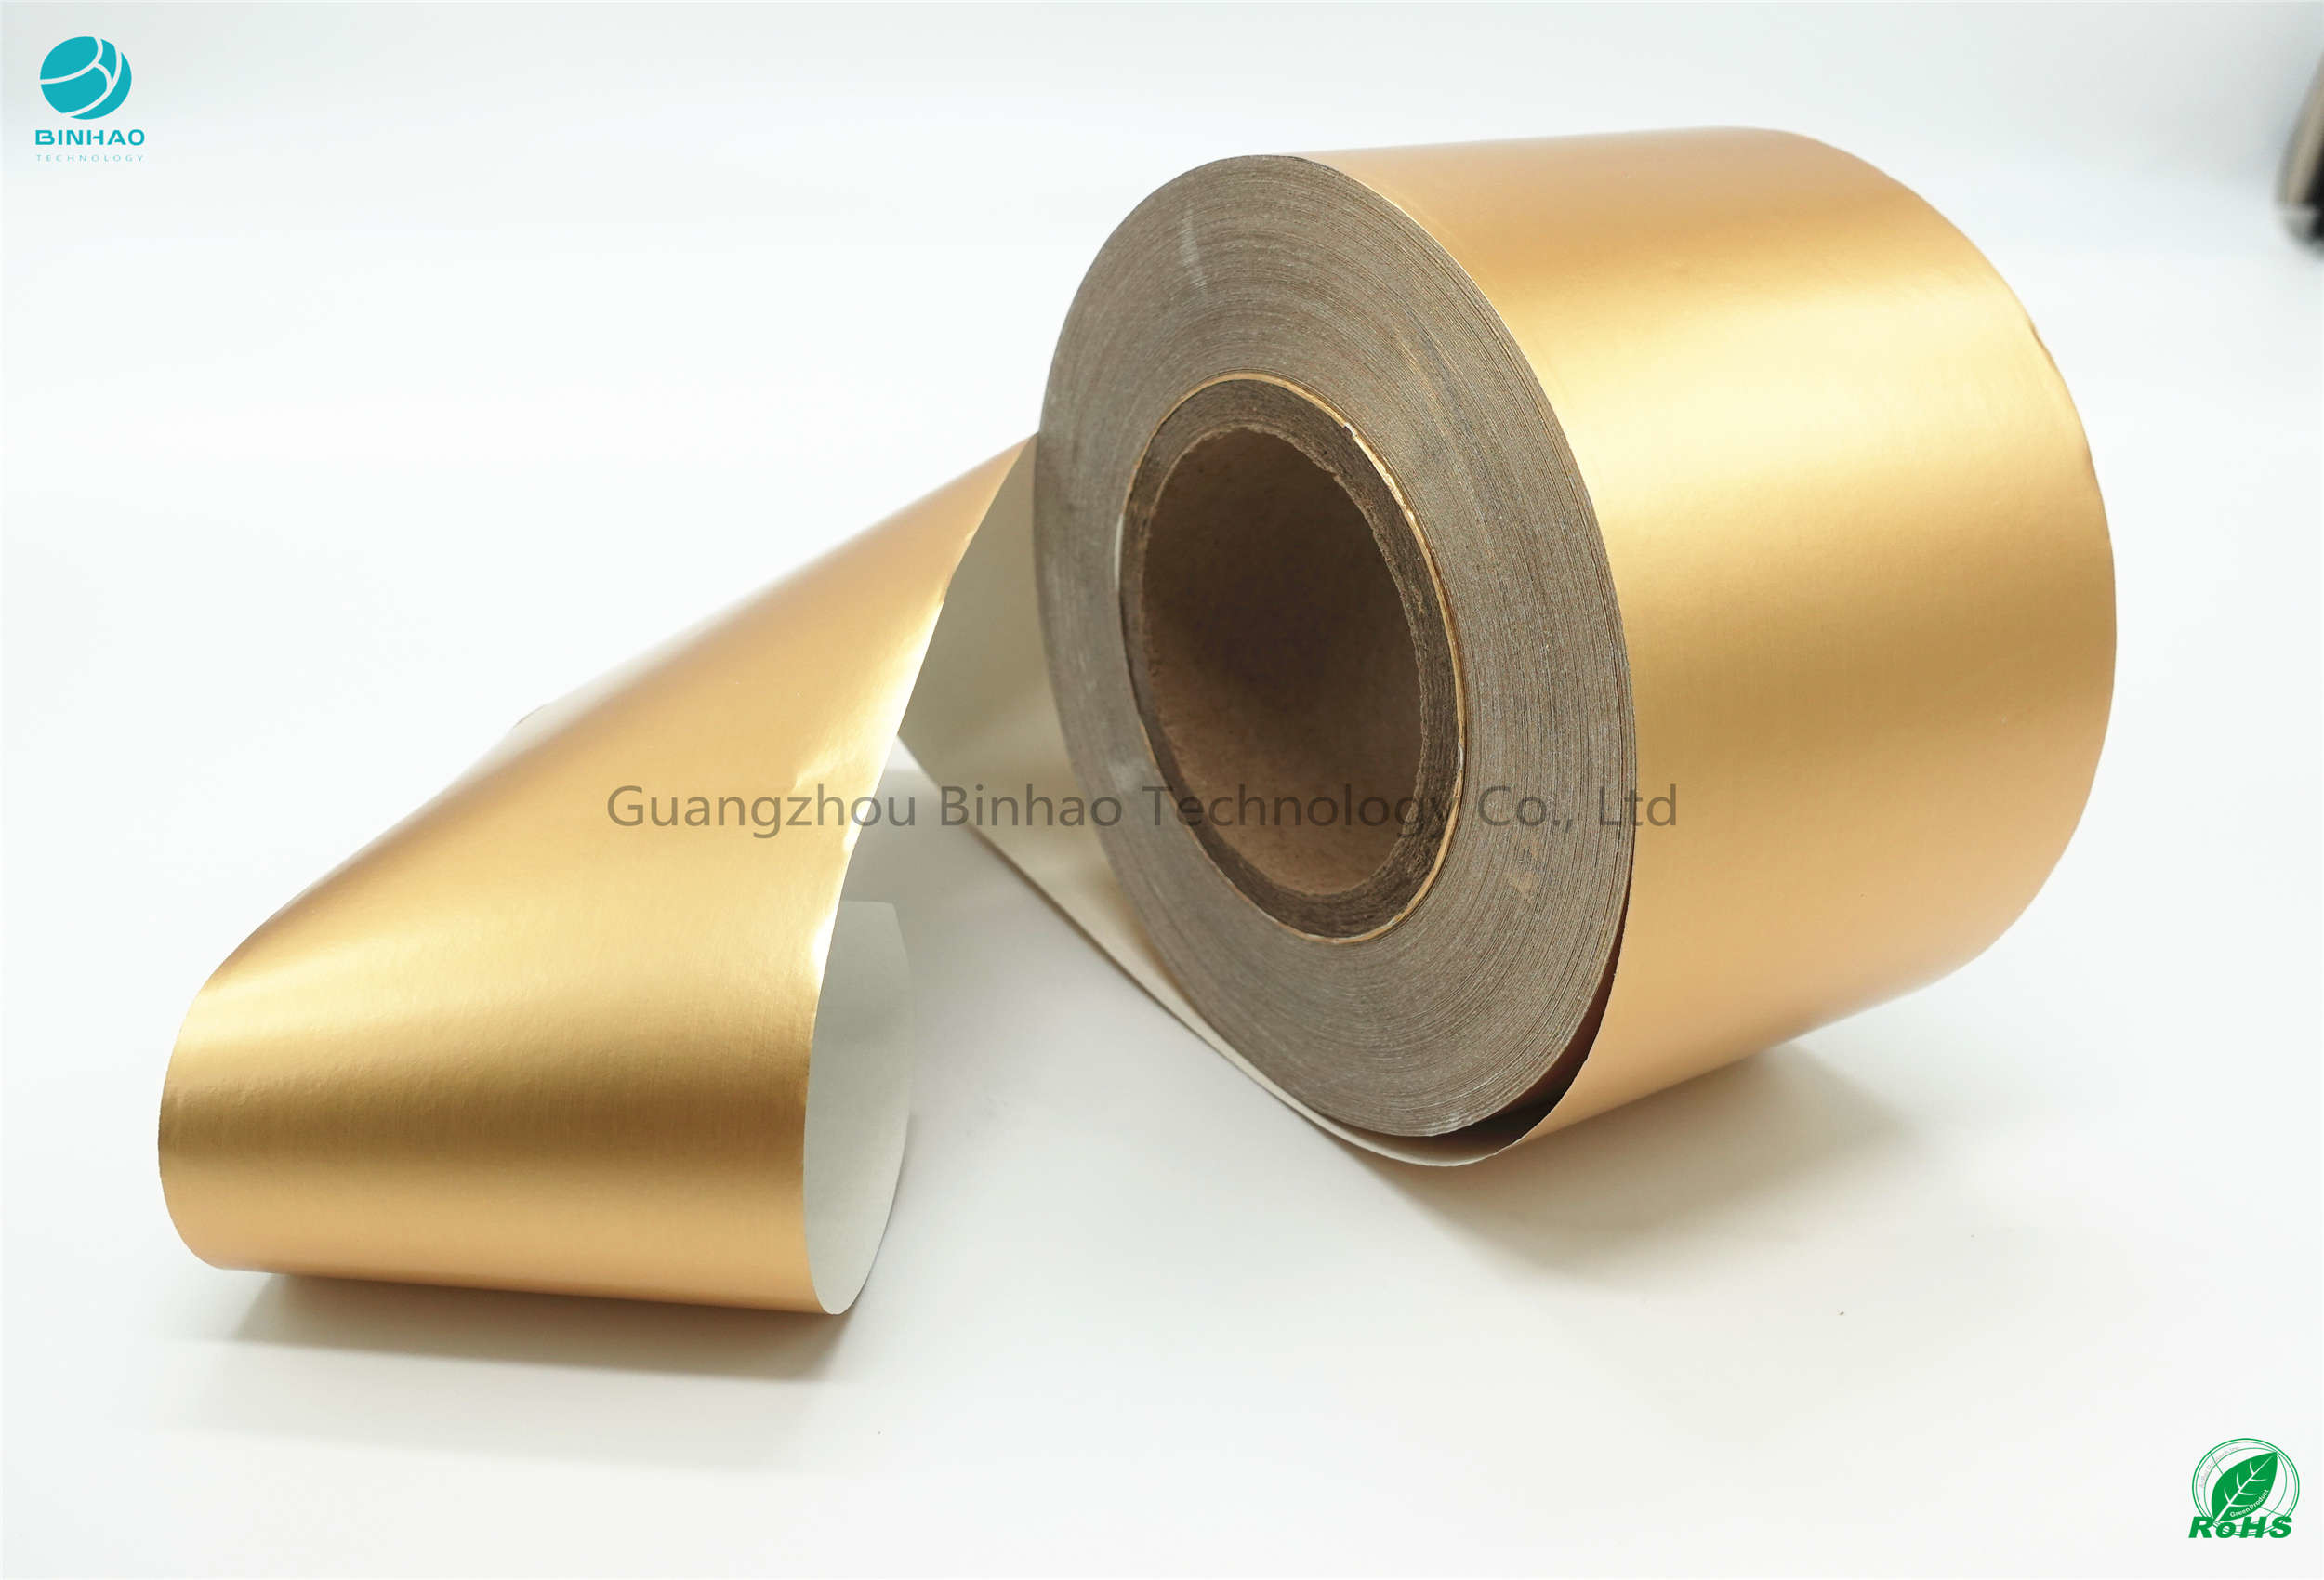 مقاومت کششی طلا 3 کیلوگرم / 15 میلی متر حداقل 32 گرم در دقیقه سیگار کاغذی فویل آلومینیوم